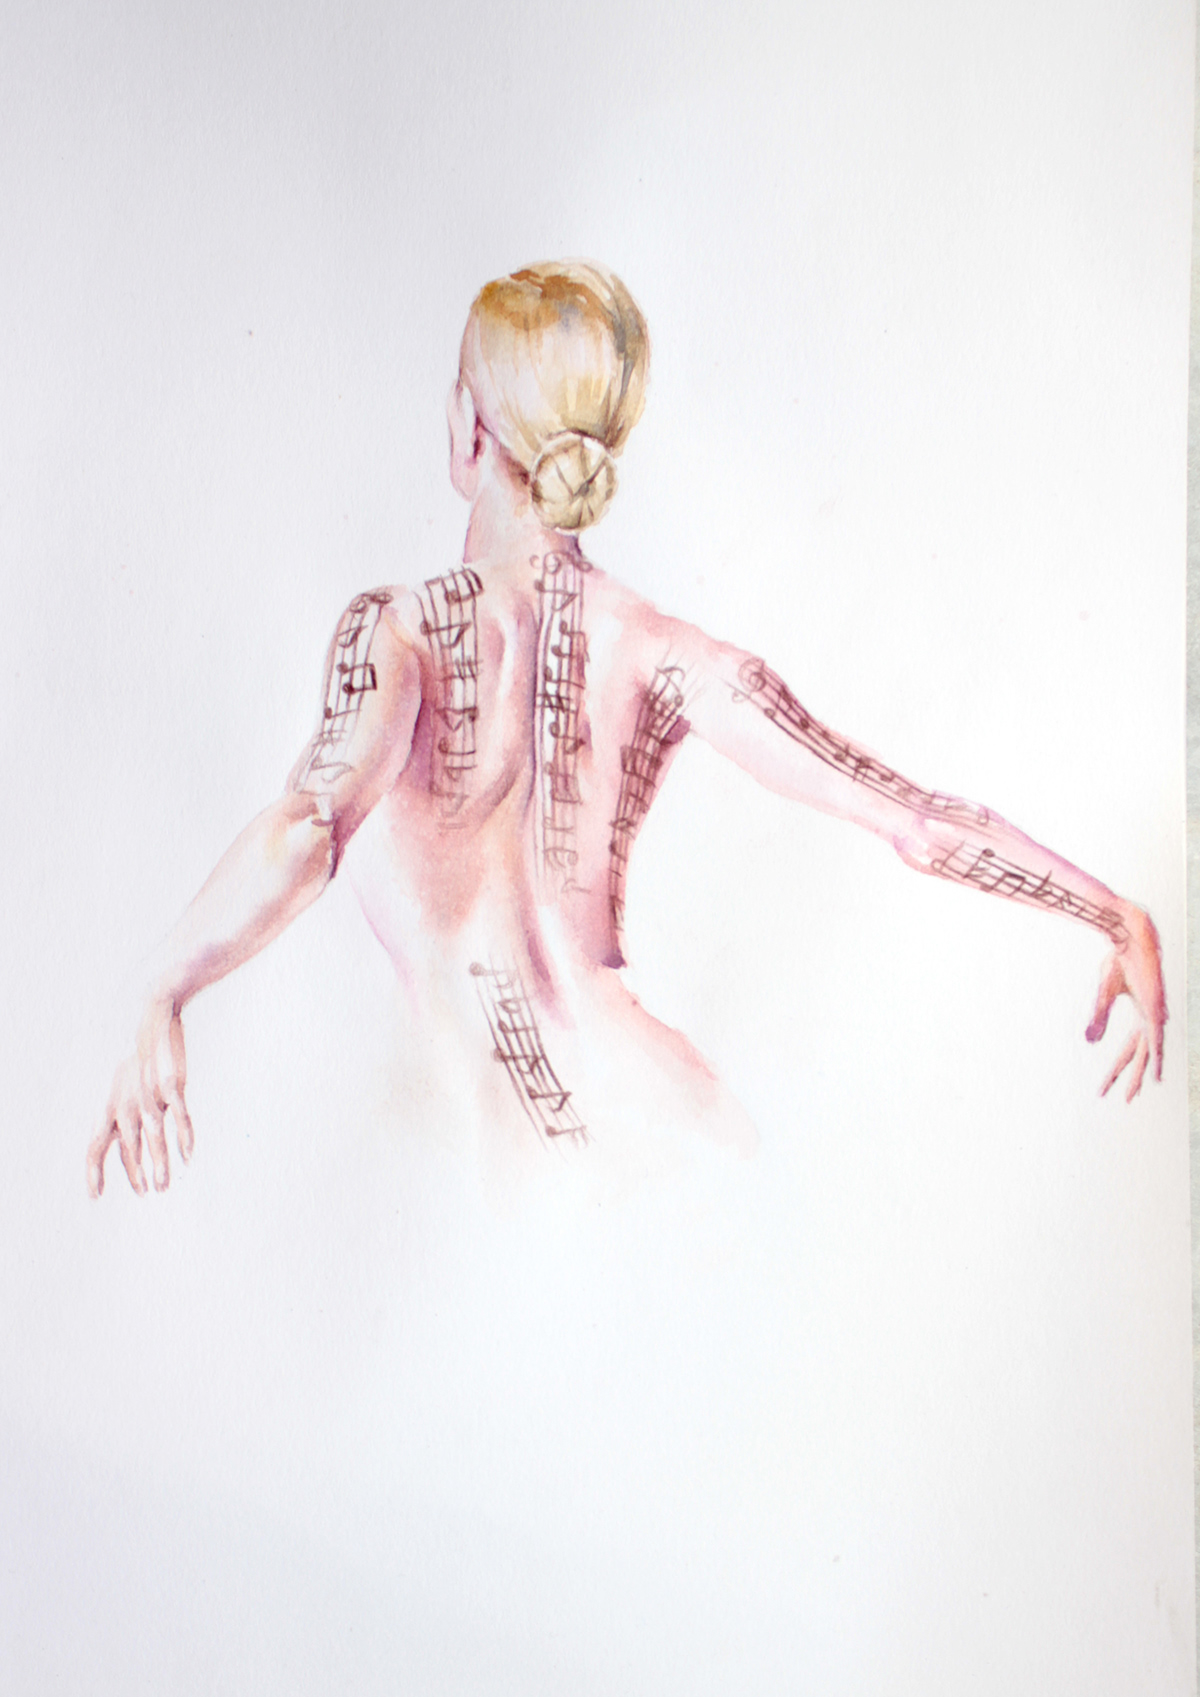 watercolor illustrations death figurative fashion illustration livor mortis afterlife